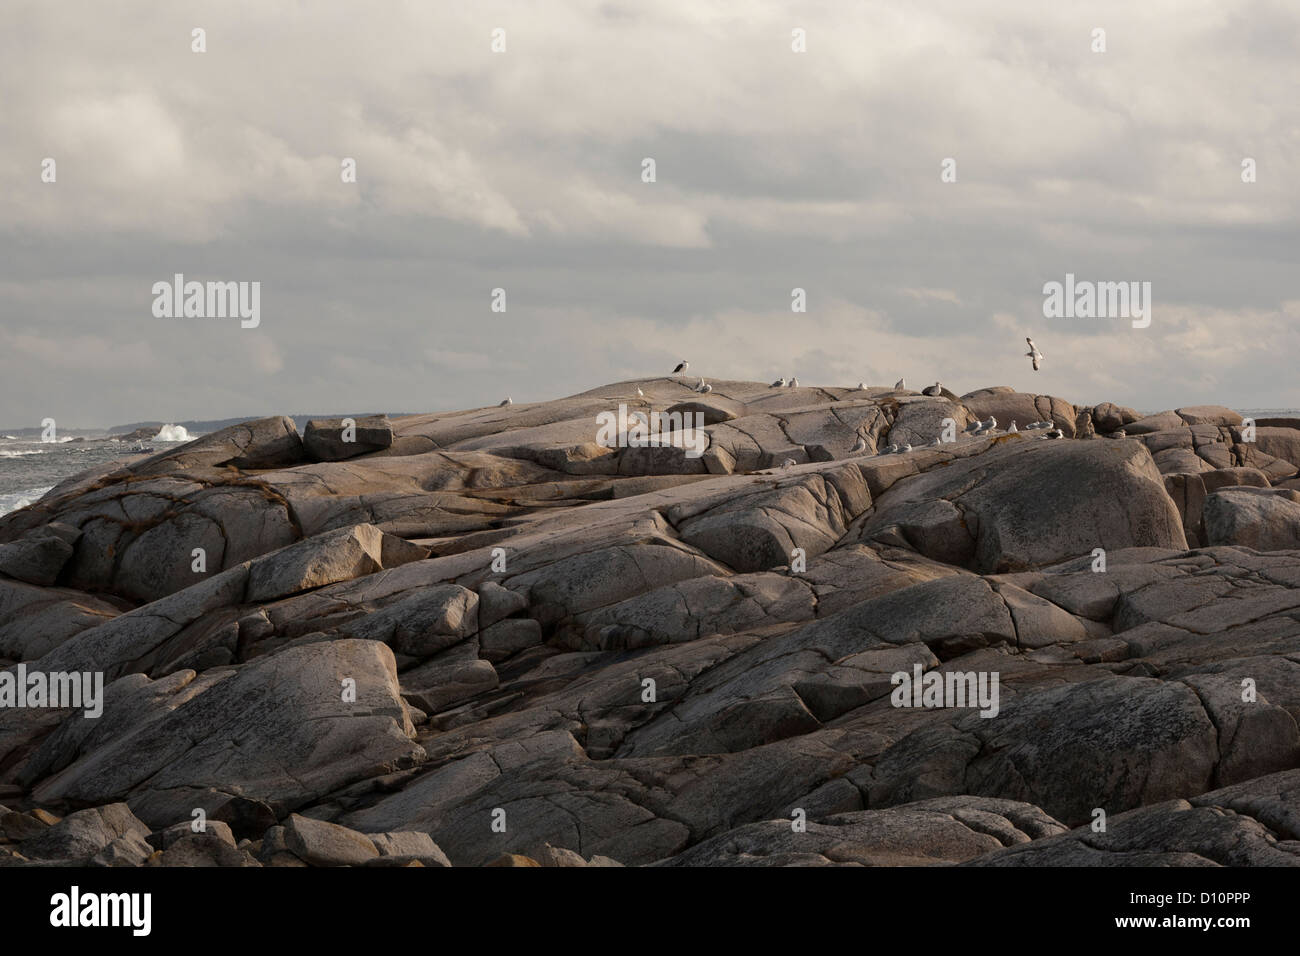 Formación rocosa con gaviotas y ligera vista de océano en el fondo. Cielo nublado. Foto de stock